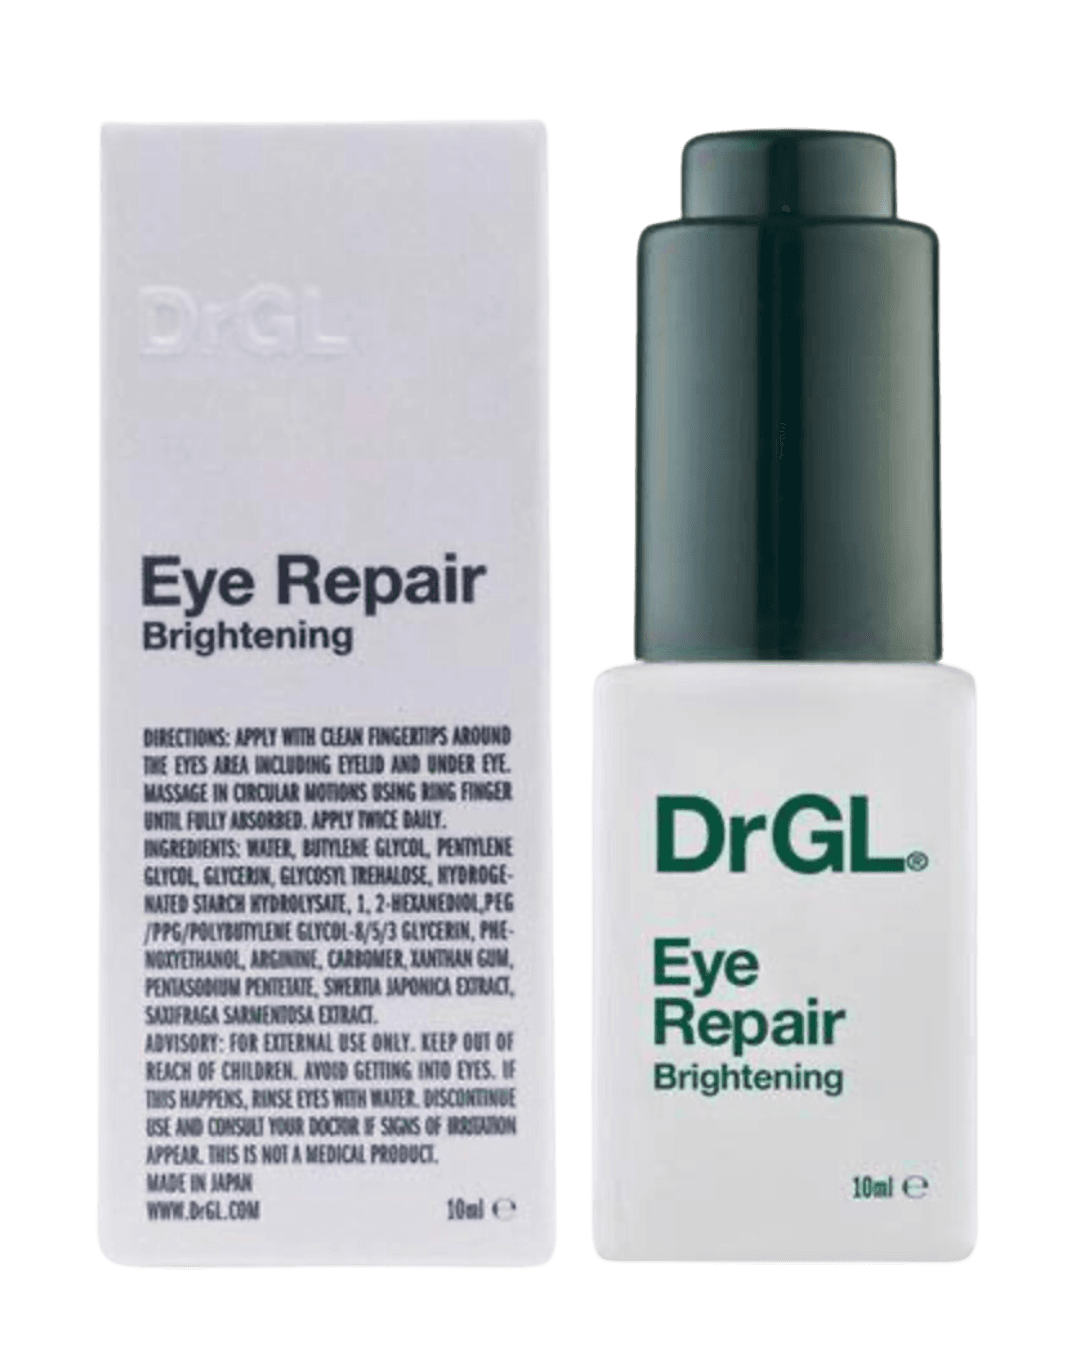 DrGL Eye Repair Brightening